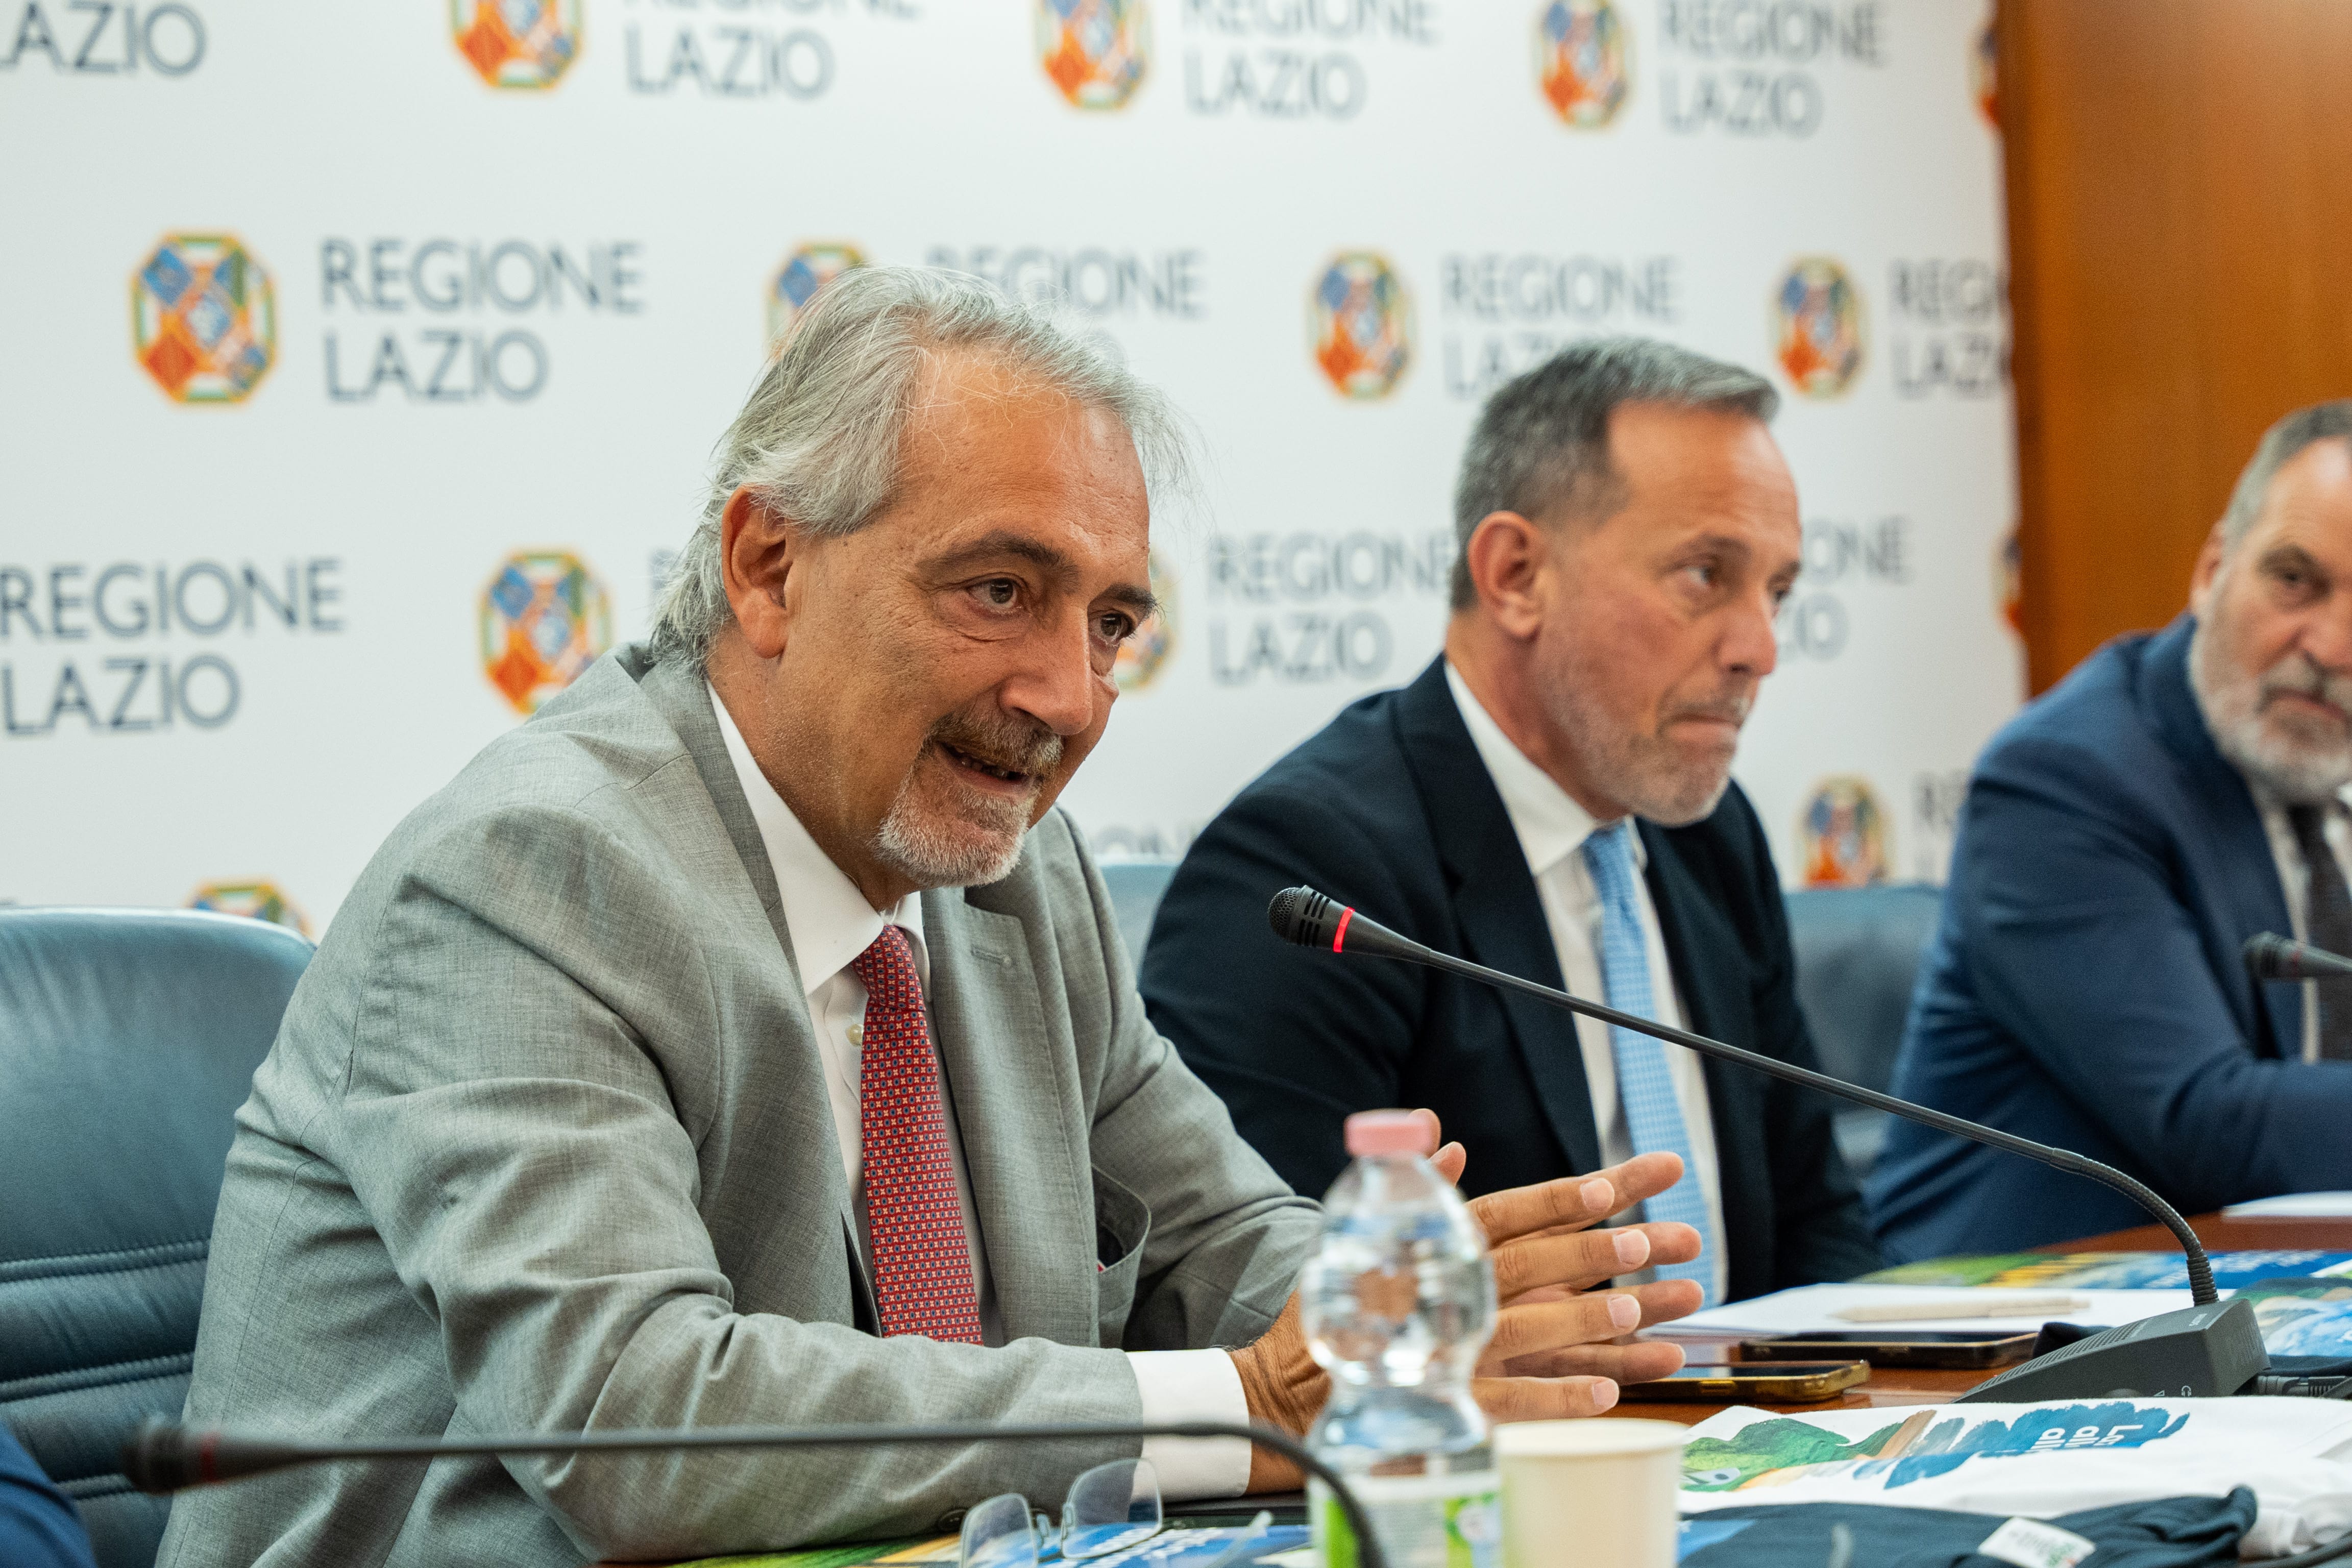 Lazio Region Council